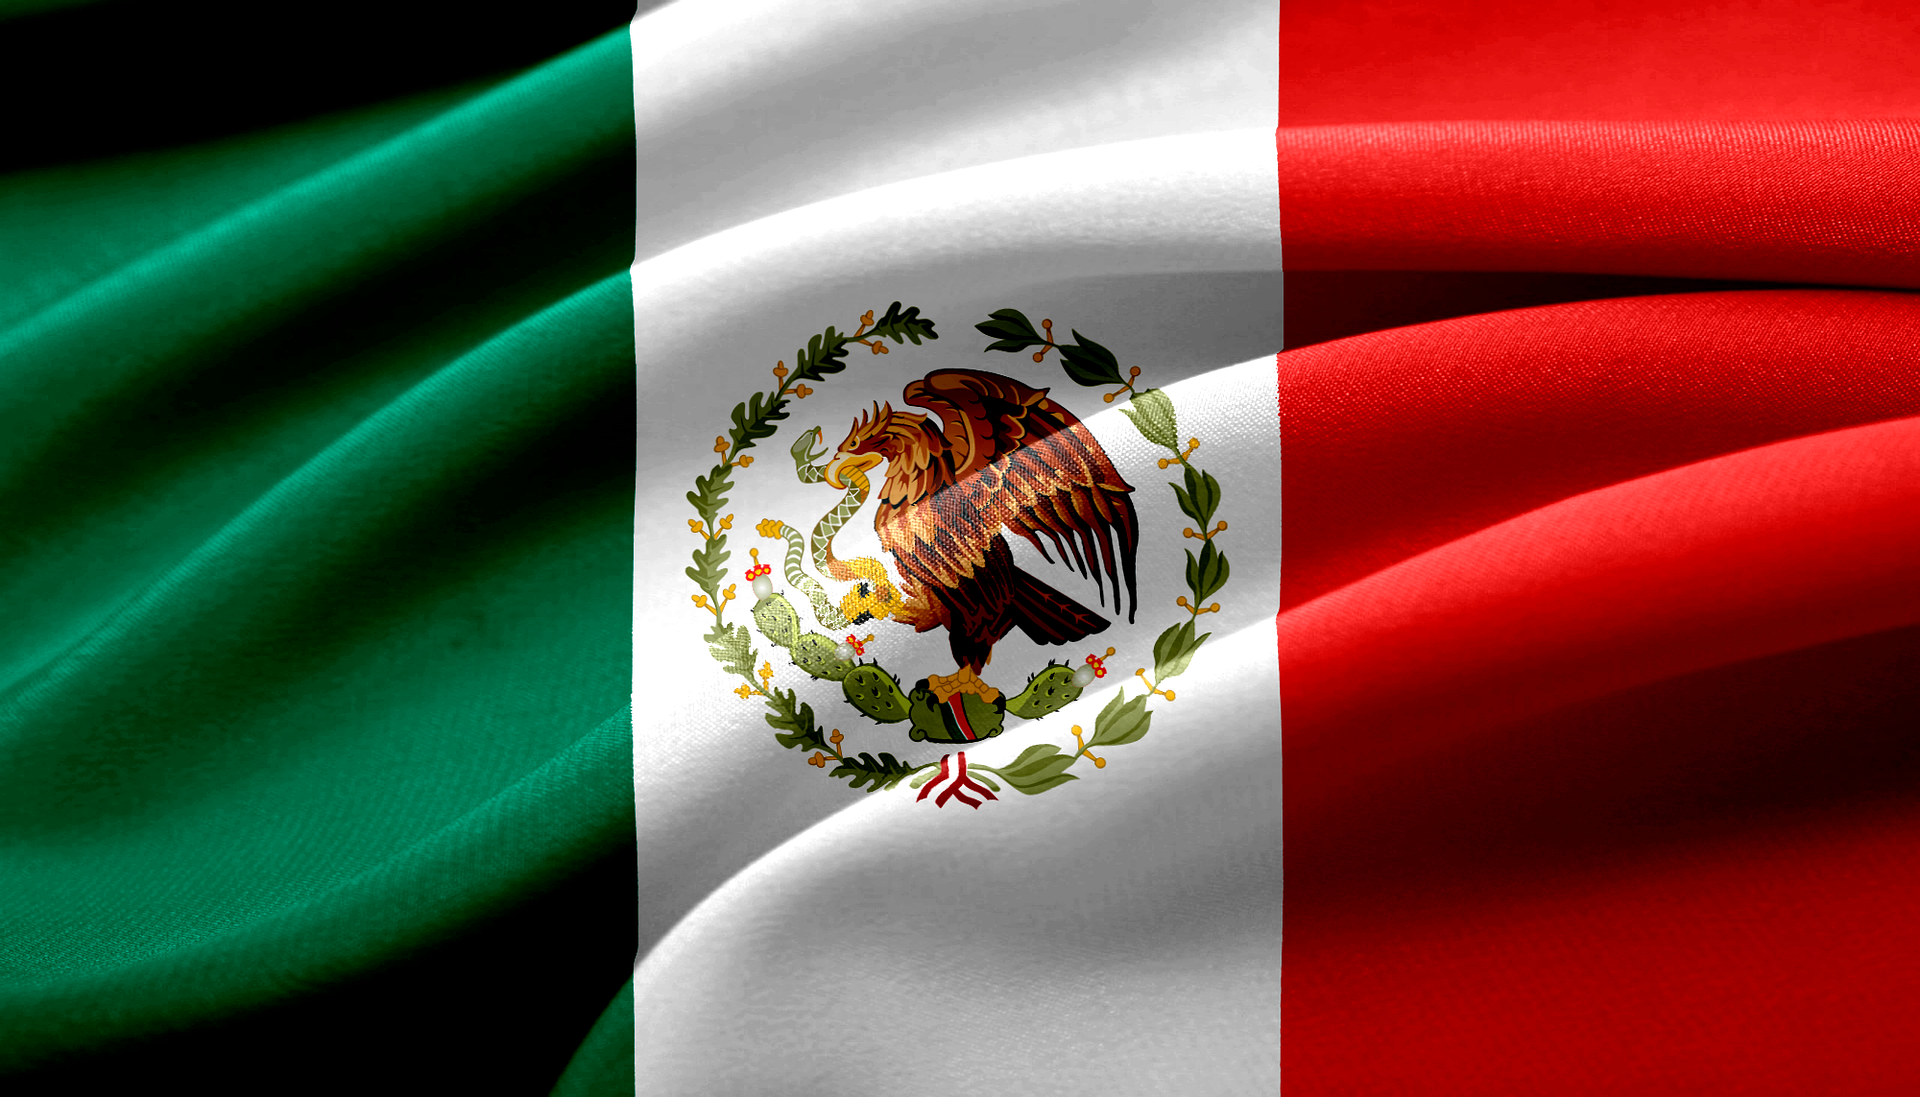 HANetf meddelade i dag att företag i samarbete med den mexikanska mäklaren Casa de Bolsa Finamex, SAB de CV 'Finamex', gemensamt utvecklat en UCITS-börshandlad fond (ETF)för mexikansk notering. ETFen kommer att noteras både på börser i Europa och på Bolsa Mexicana de Valores (BMV) under första halvåret 2022.